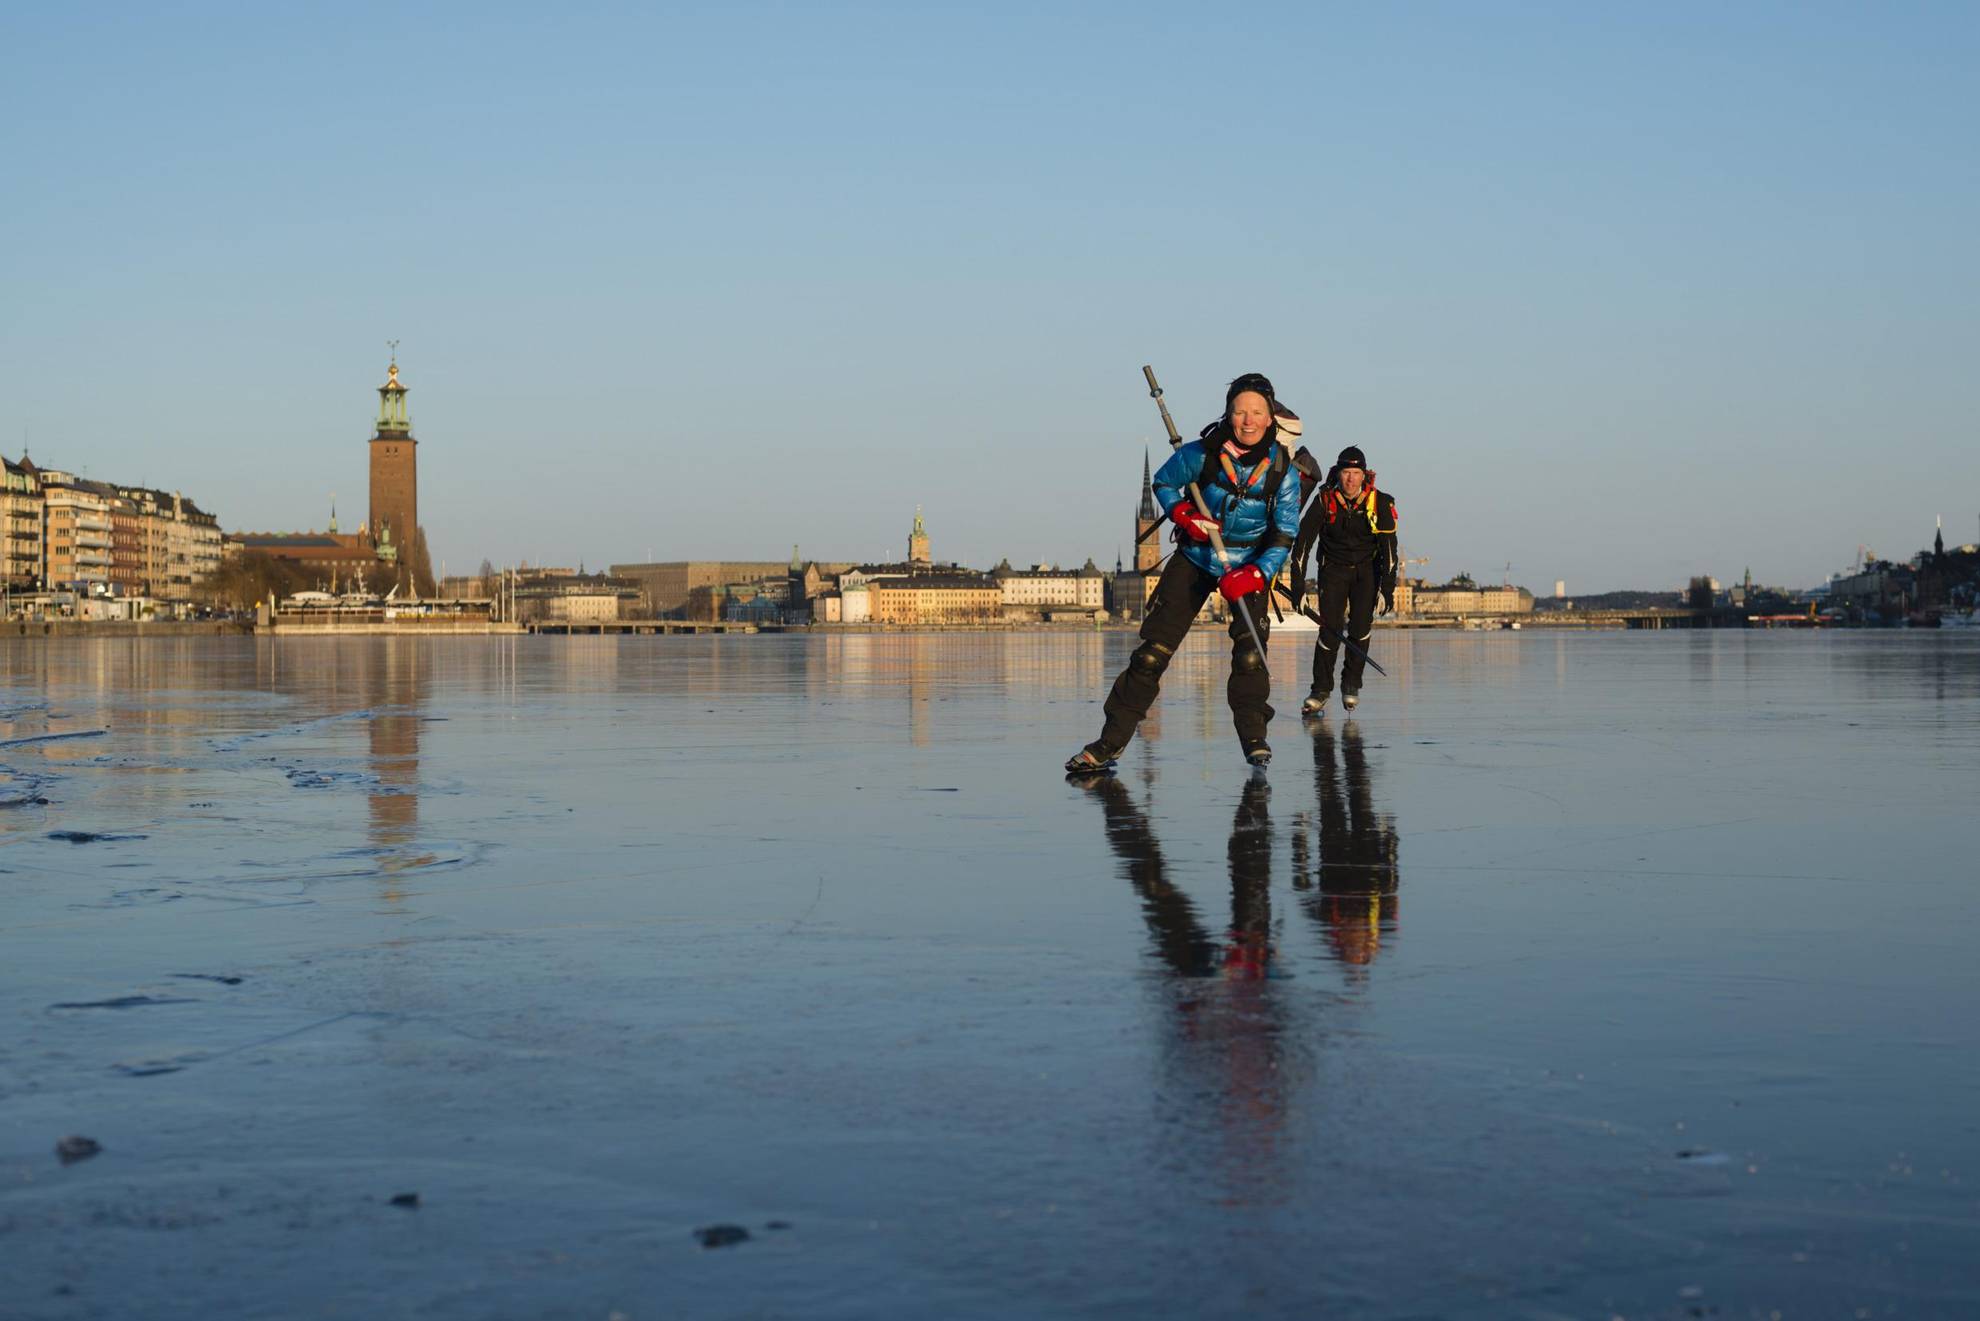 Twee schaatsers op het meer met op de achtergrond het stadhuis van Stockholm.